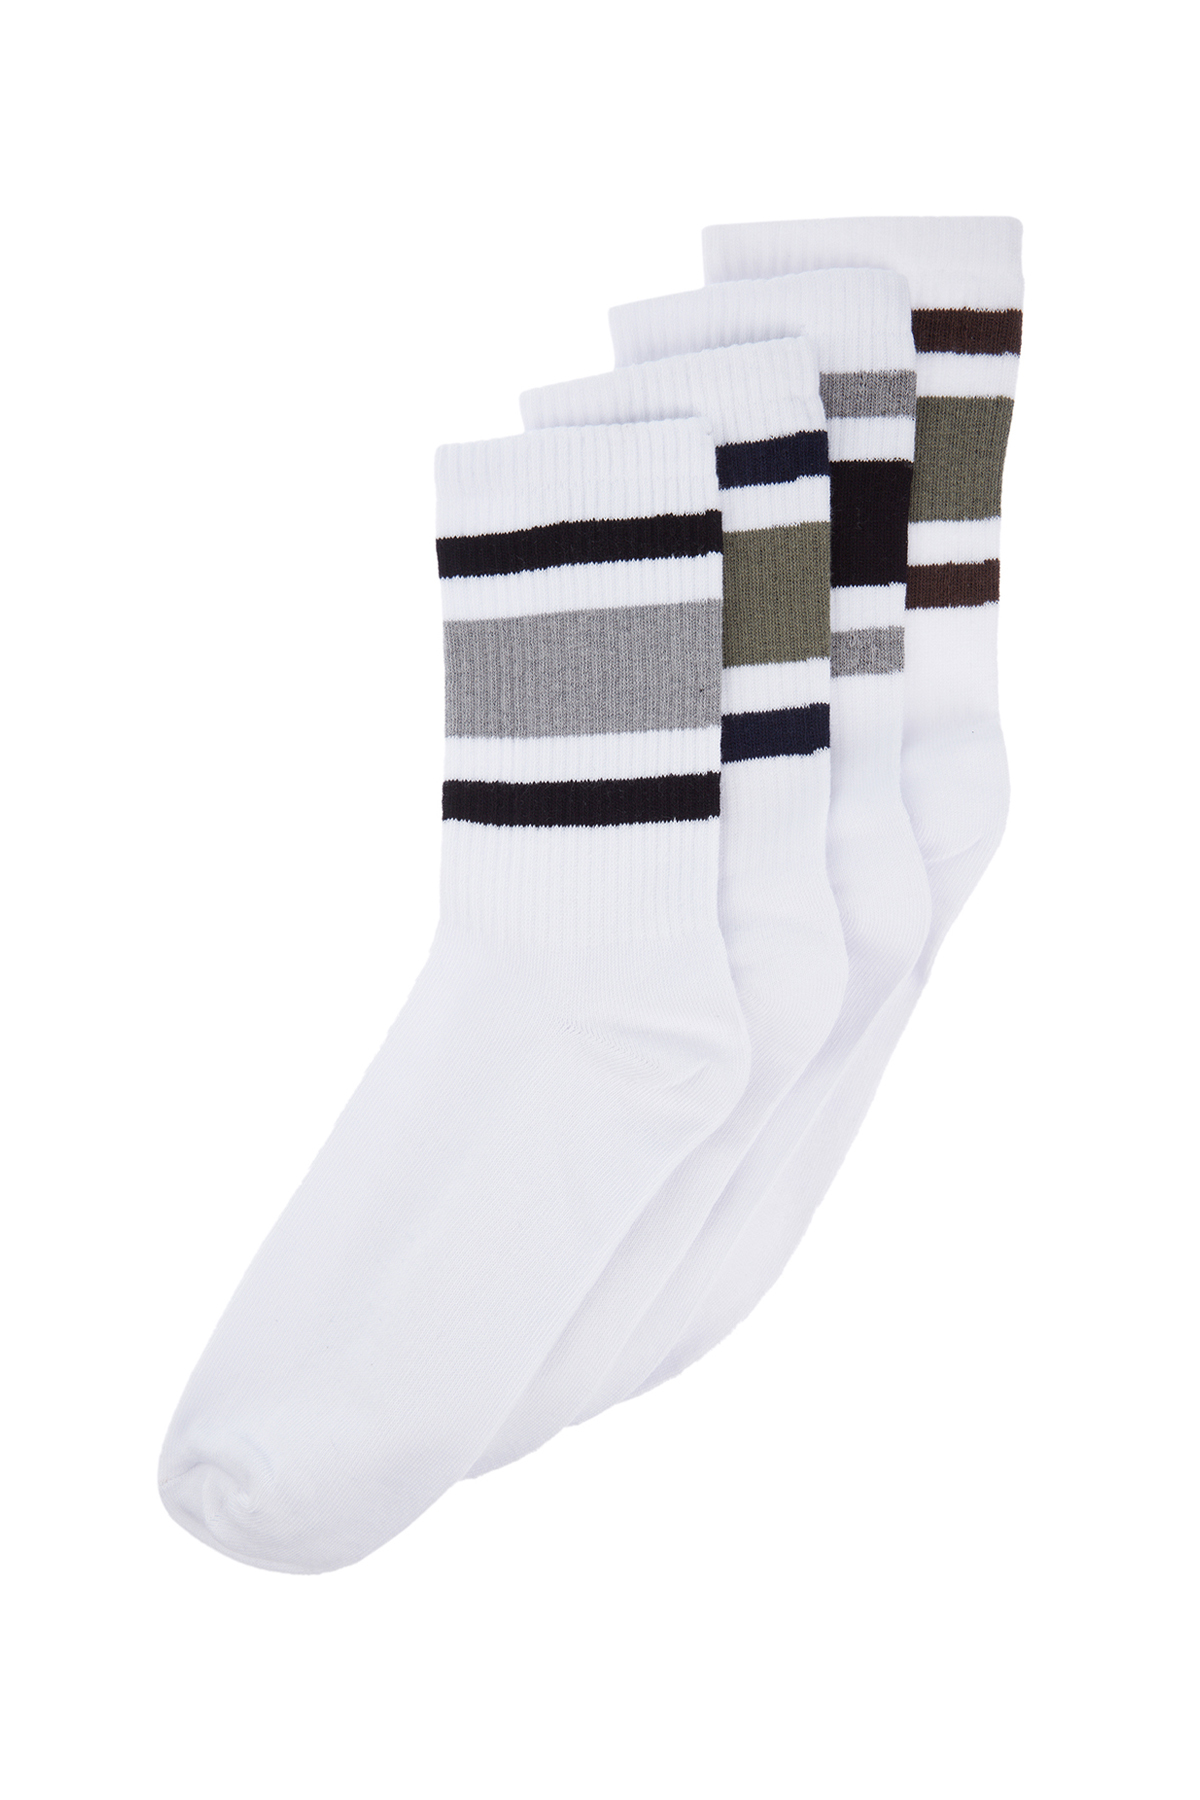 Trendyol Men's White Cotton 4 Pack Striped Socks